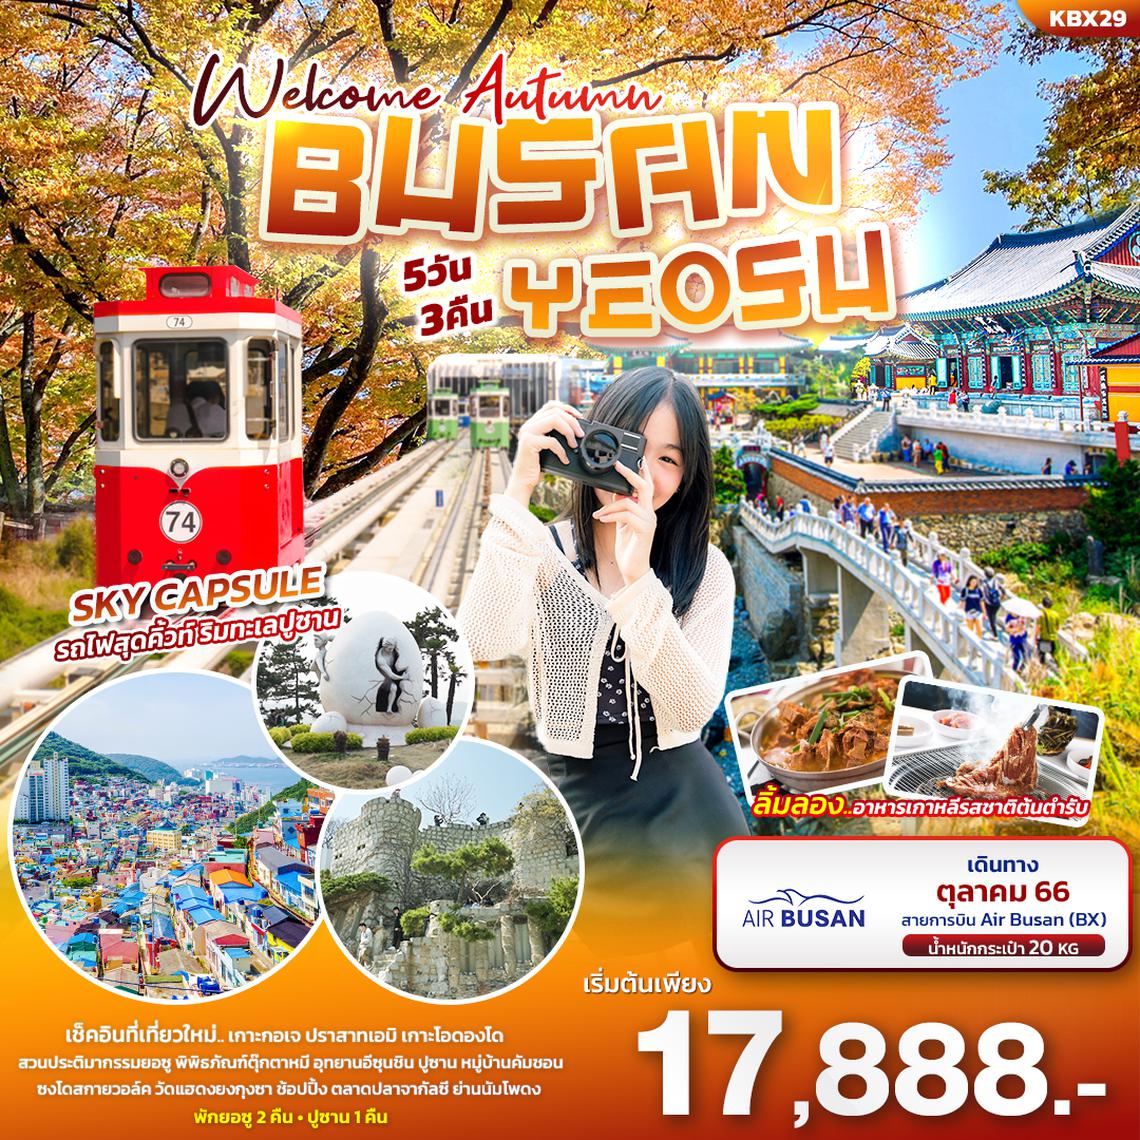 ทัวร์เกาหลี Welcome Autumn BUSAN YEOSU 5 วัน 3 คืน